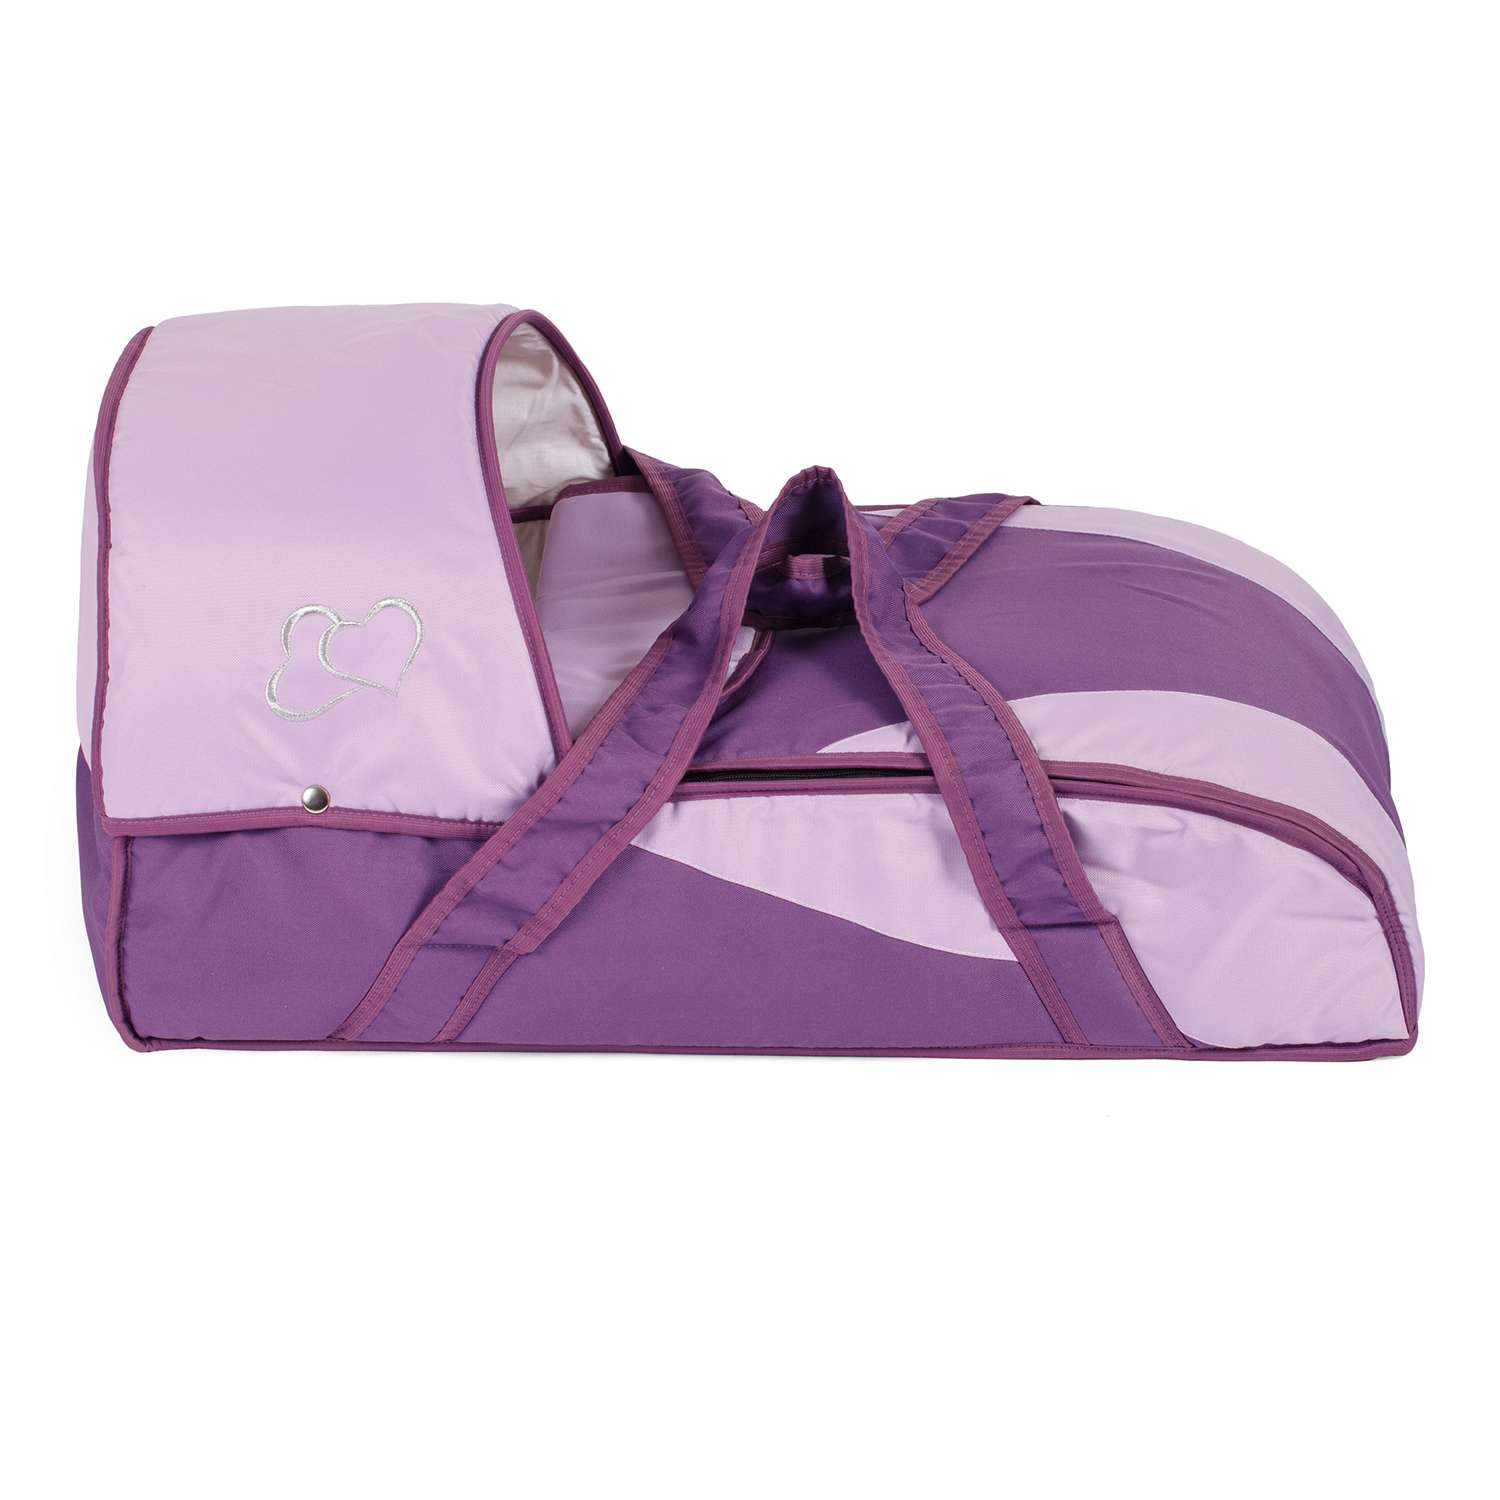 Переноска-люлька BABY STYLE New фиолетовый светло-сиреневый вышивка 16559 - фото 2